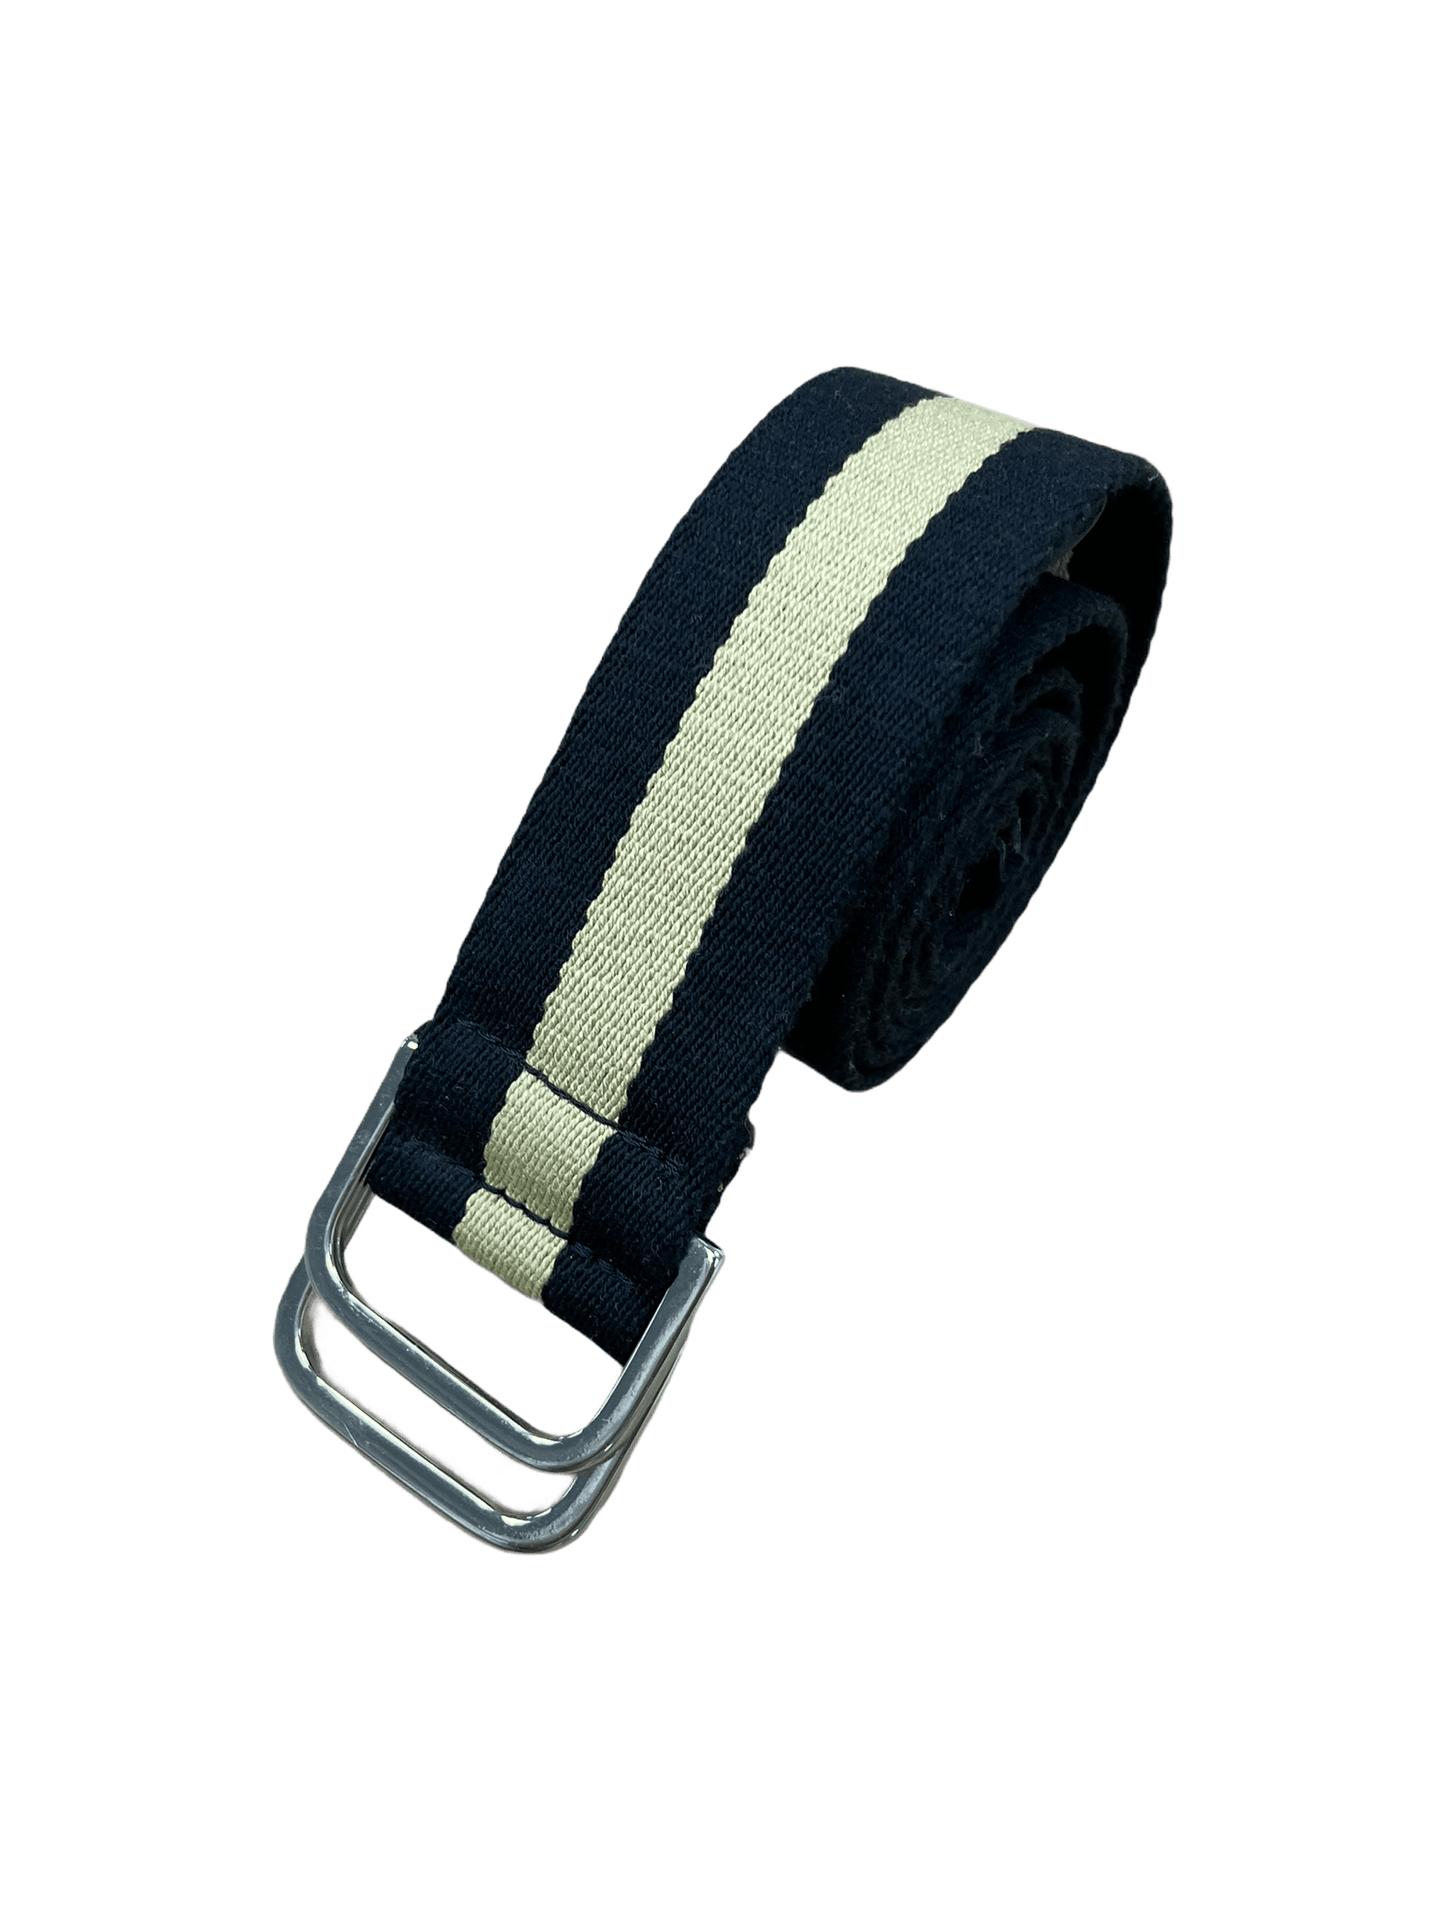 Club Monaco Black & Cream Striped Canvas Belt Small—Genuine Design luxury consignment 